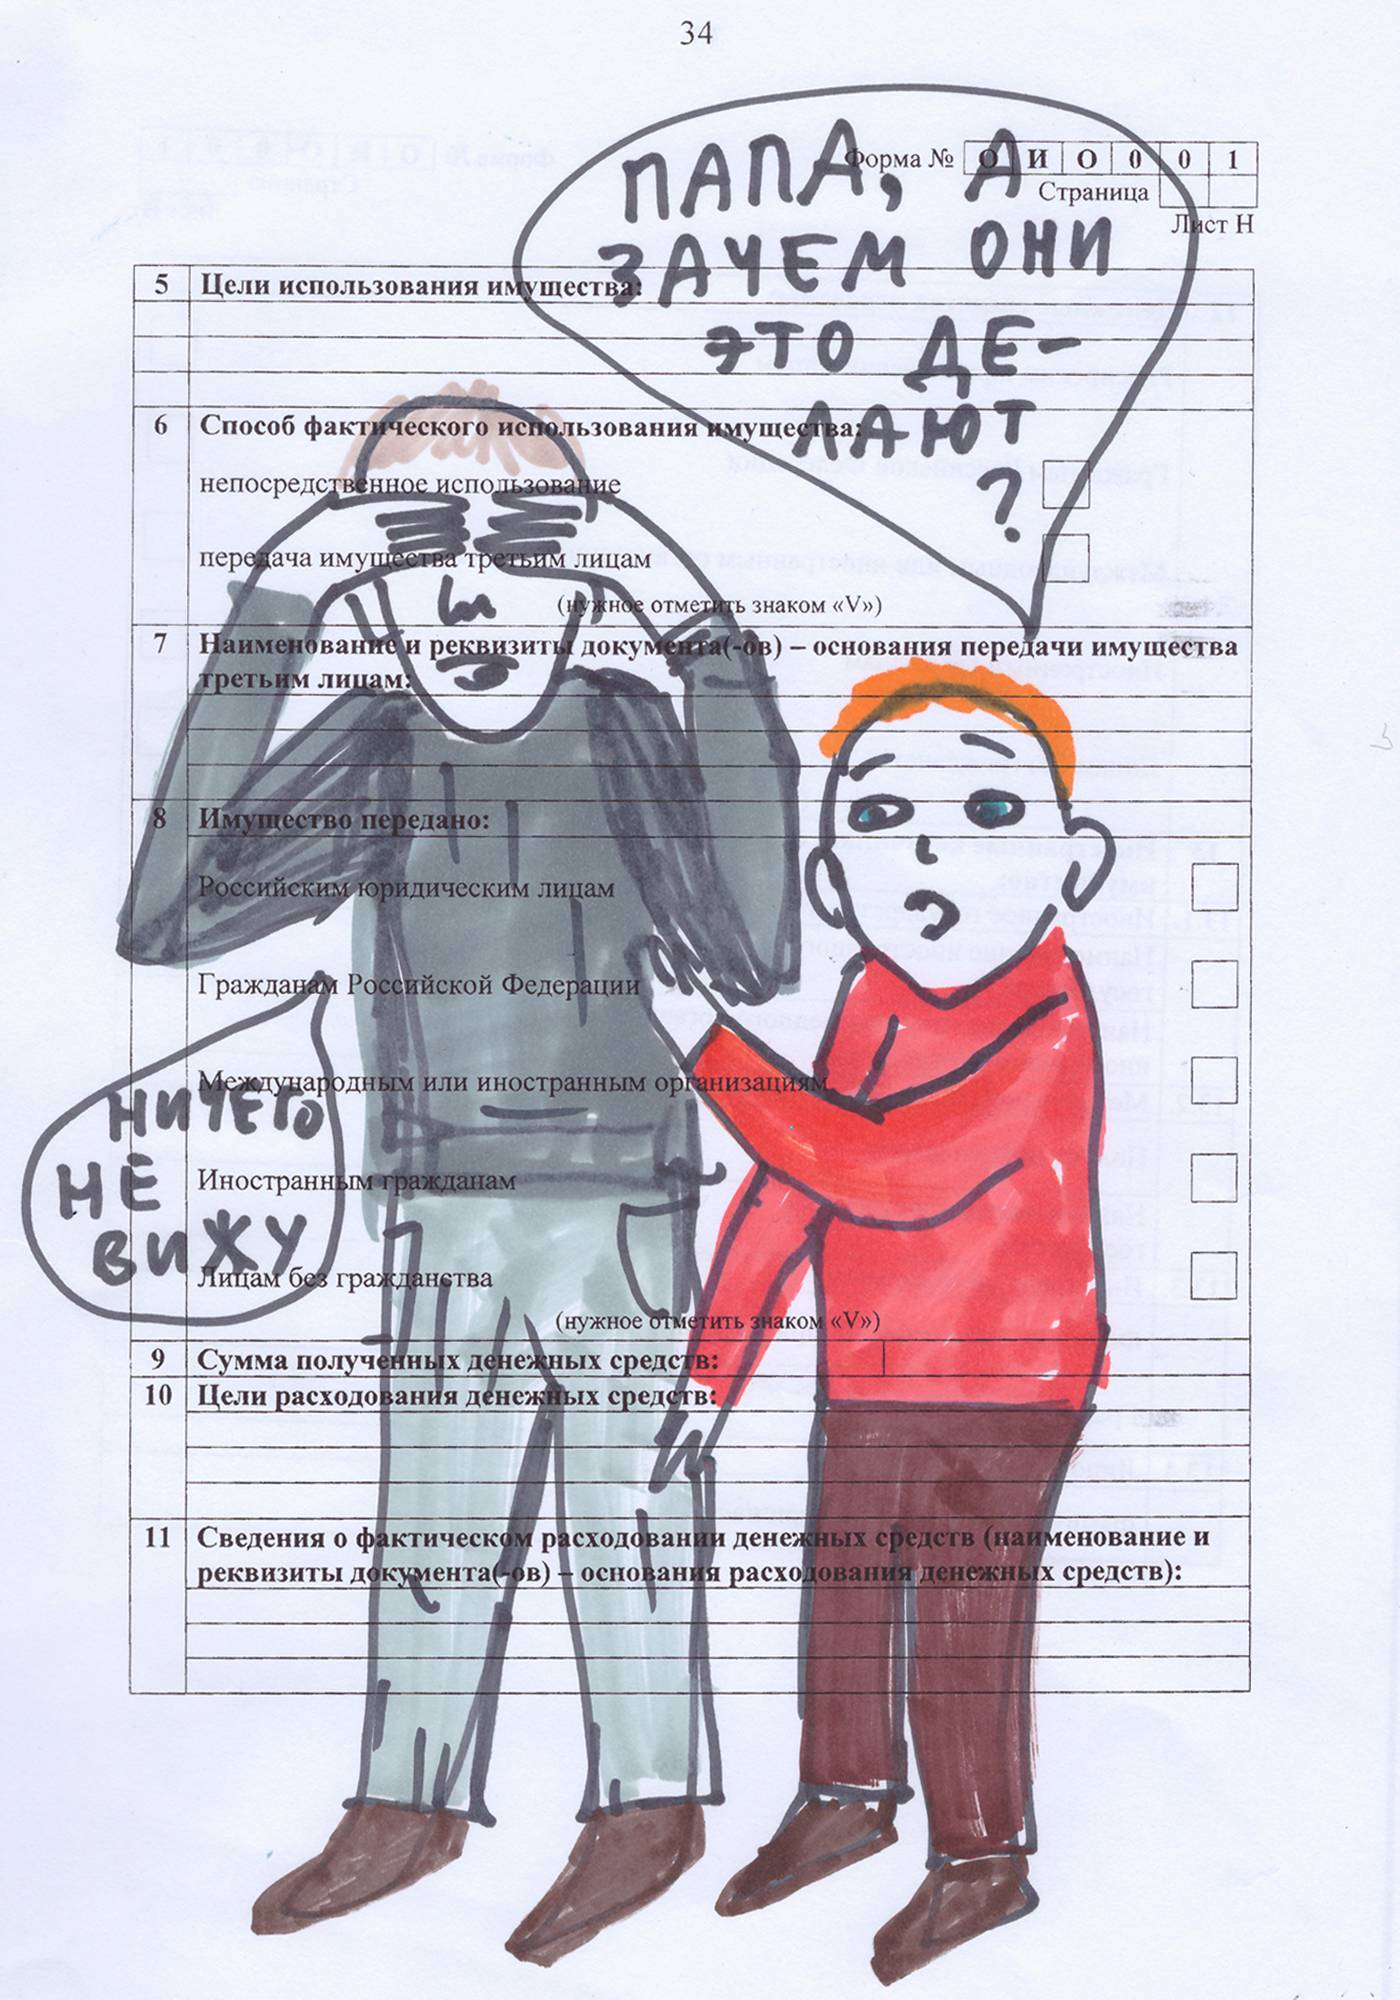 Odręczny rysunek komiksowy zrobiony na urzędowym dokumencie. Ojciec i syn, napisy po rosyjsku